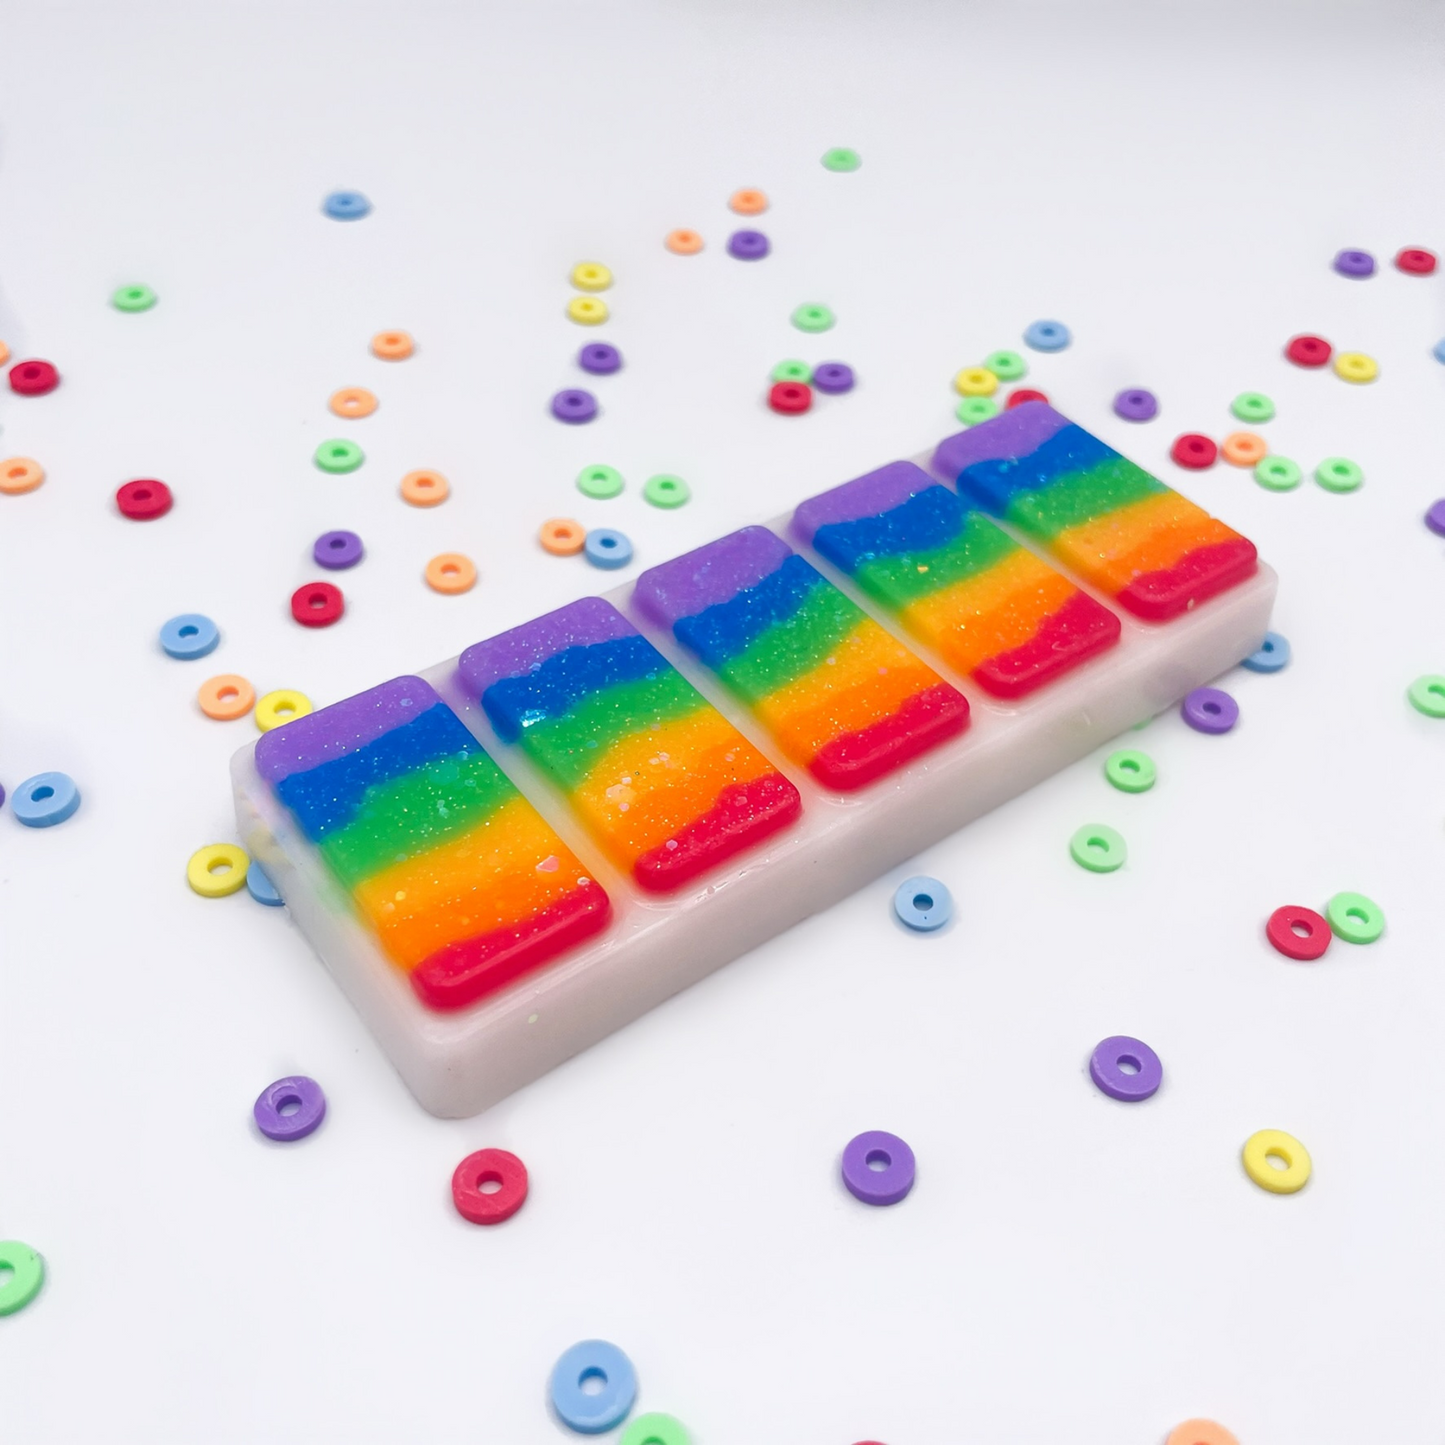 LGBTQ+ pride rainbow wax melt